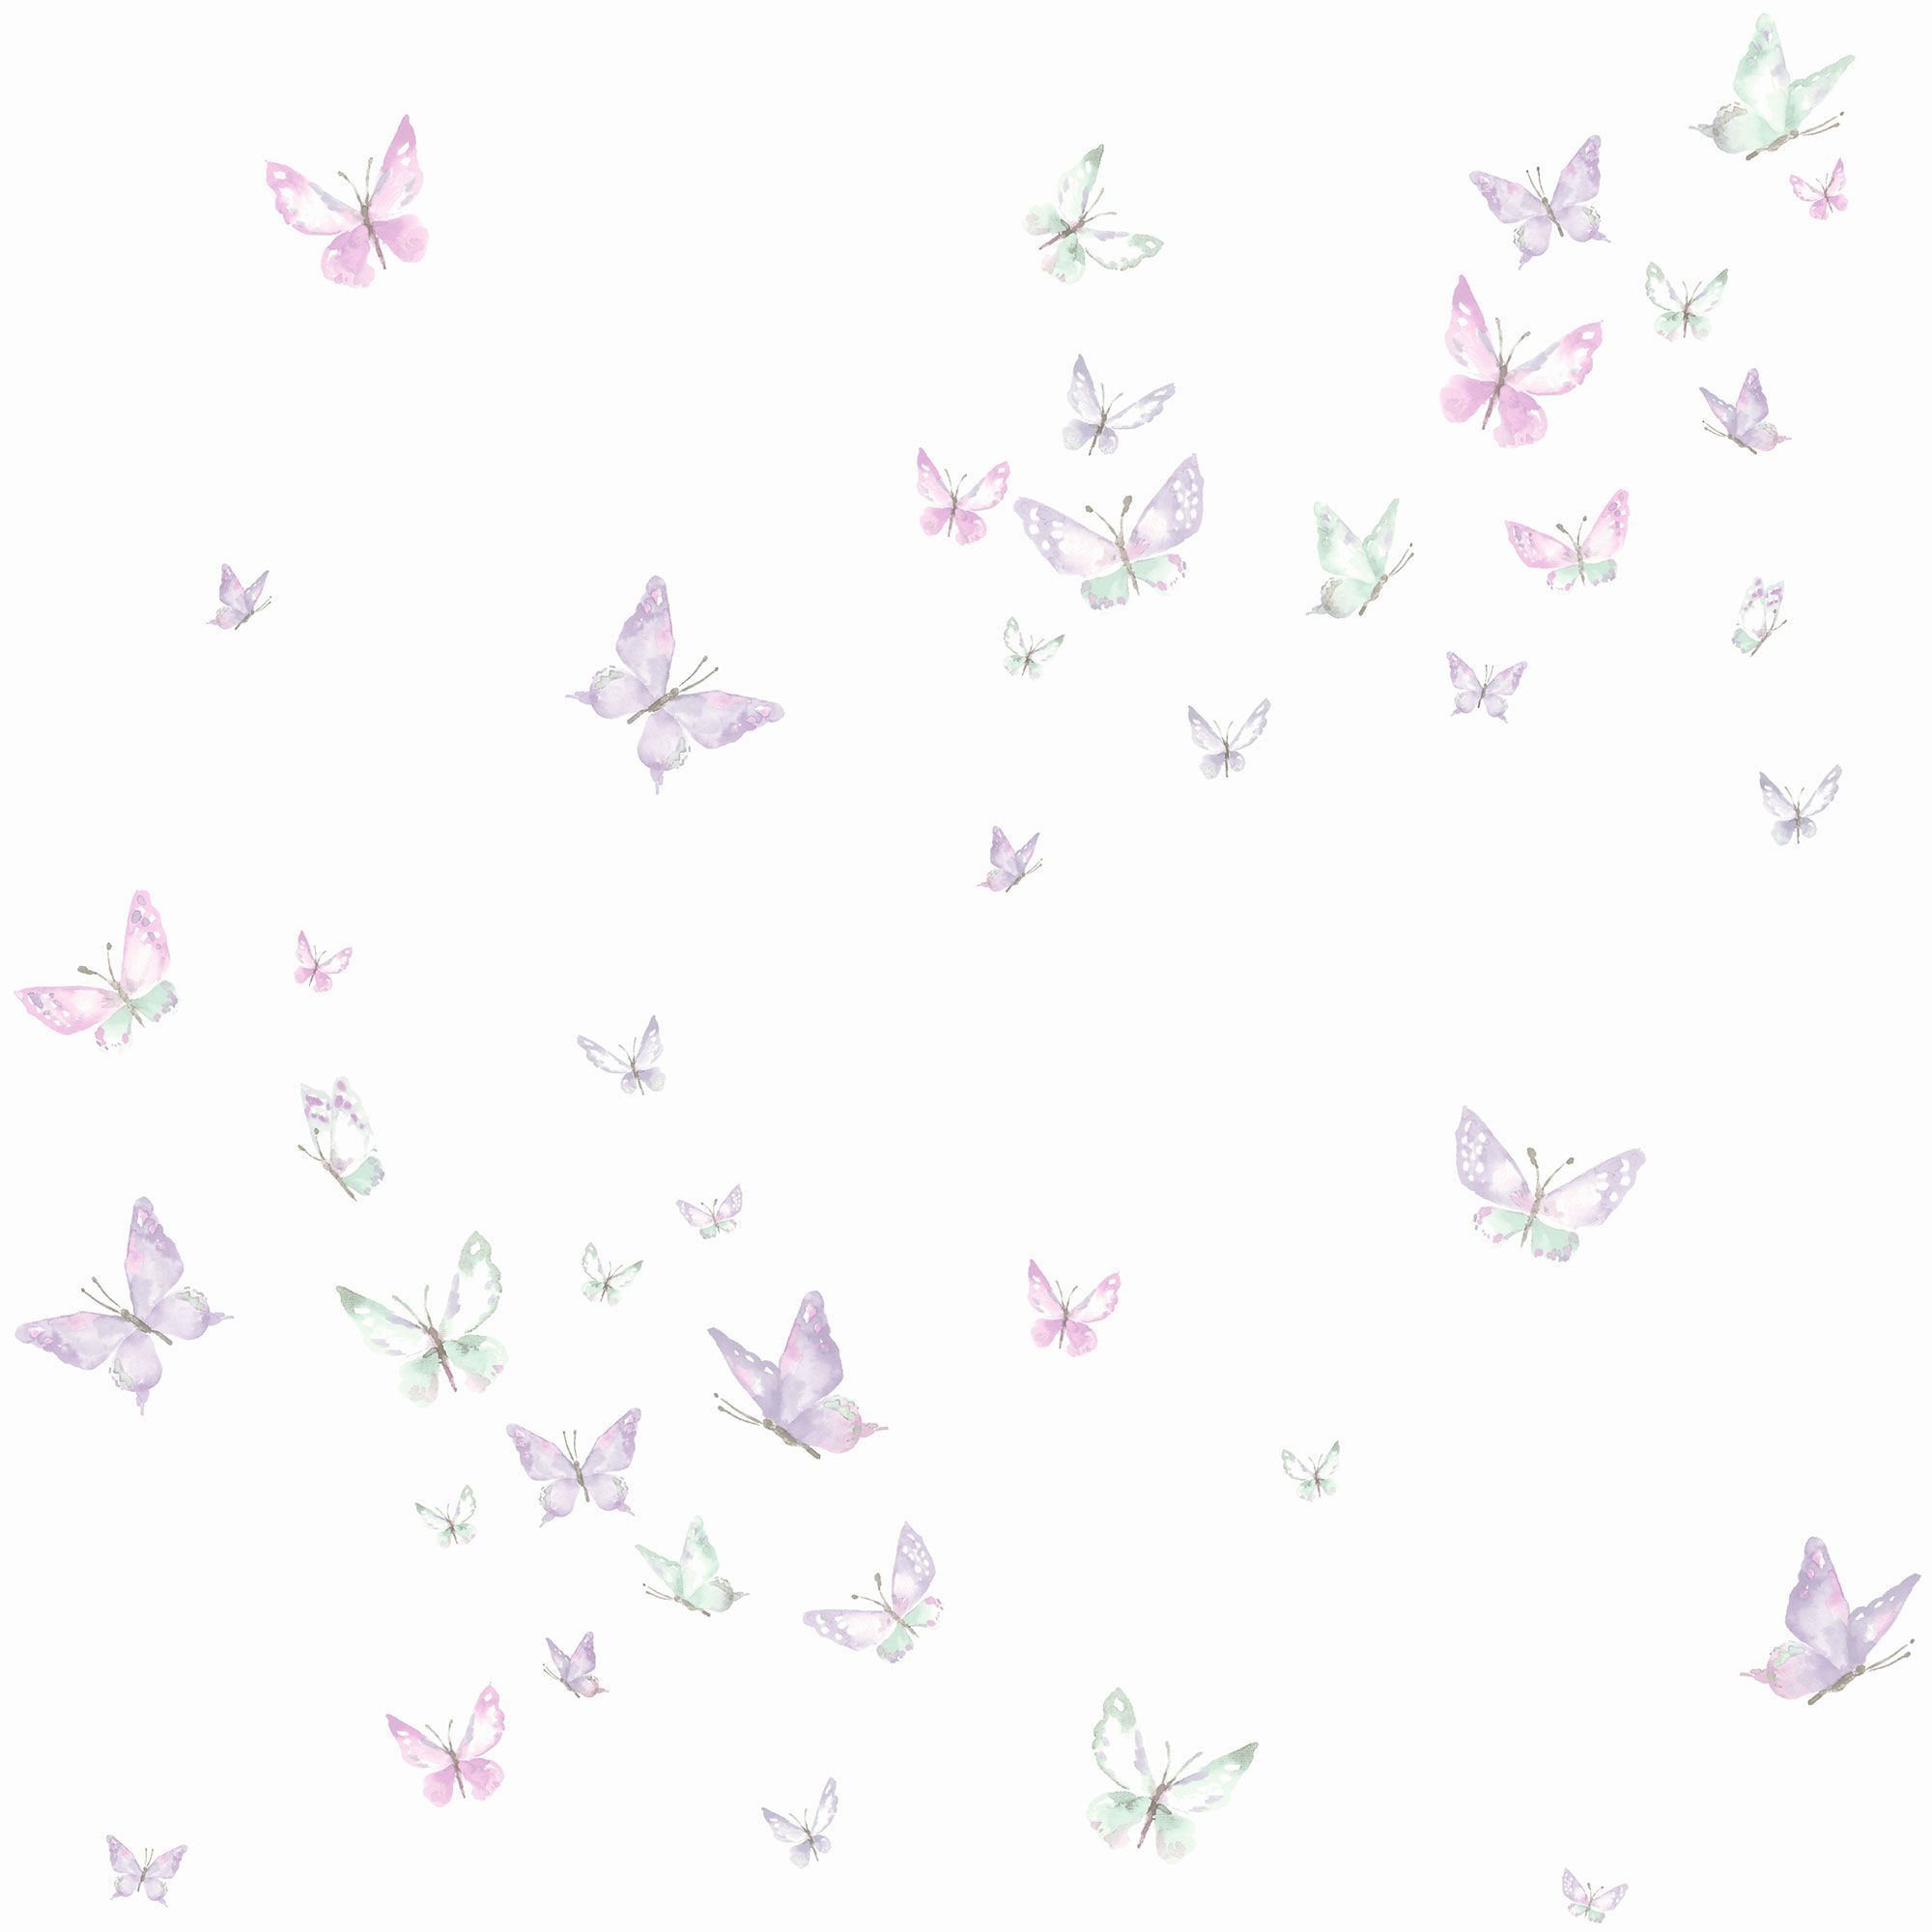 Watercolor Butterflies Wallpaper. Butterfly wallpaper, Butterfly watercolor, Purple butterfly wallpaper